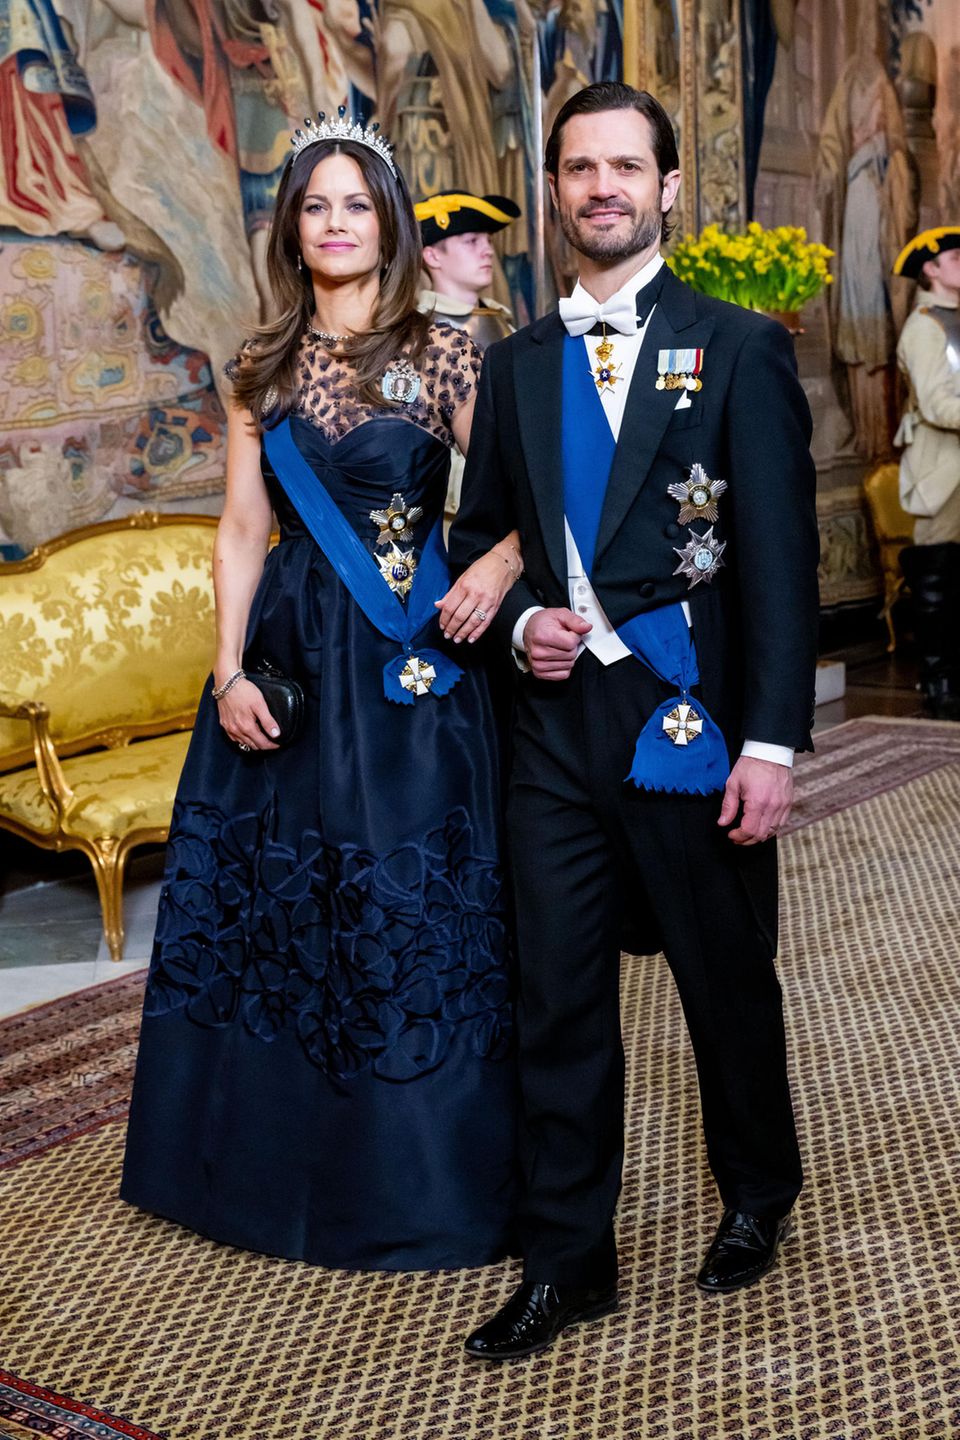 Prince Carl Philip and Princess Sofia at the state banquet at the Royal Palace.